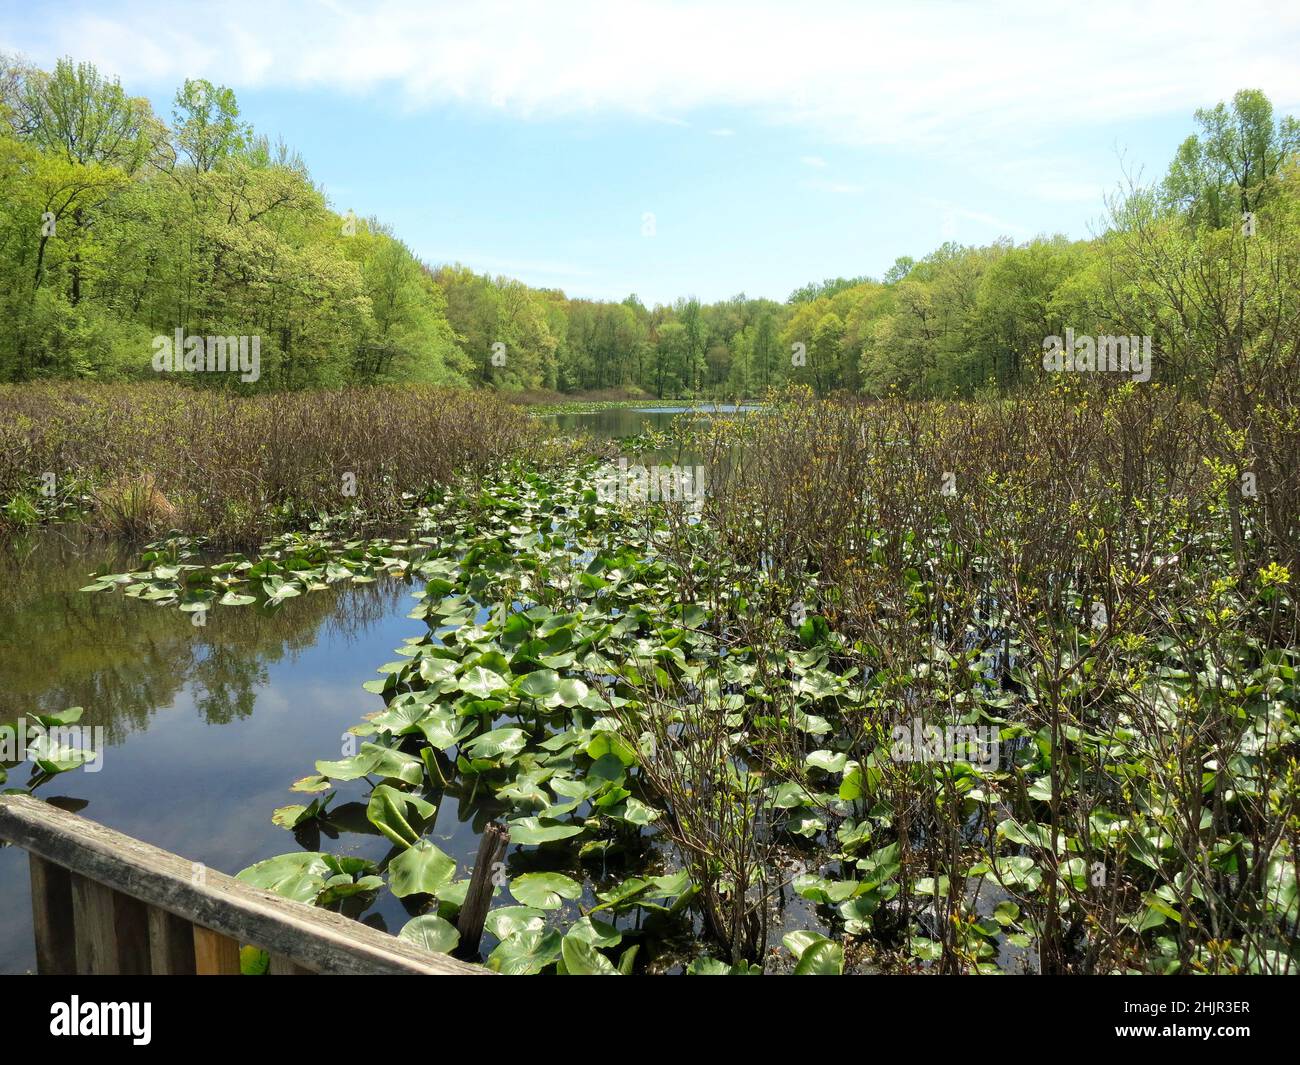 Tenafly Nature Center, è stato un leader nella conservazione dello spazio aperto educazione ambientale.Pond, lago con lonzoli verdi riflessi. Foto Stock